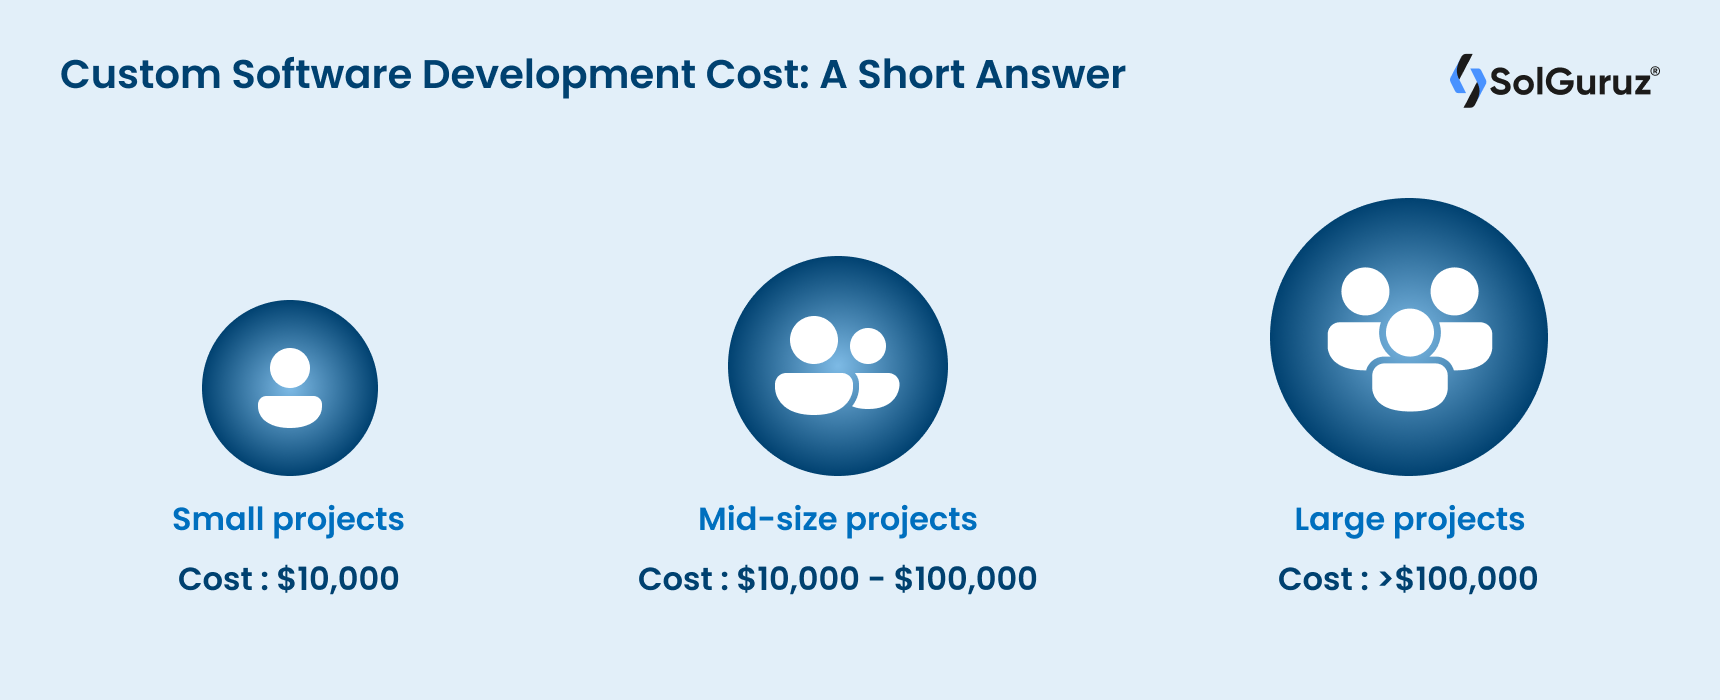 Custom Software Development Cost - A Short Answer